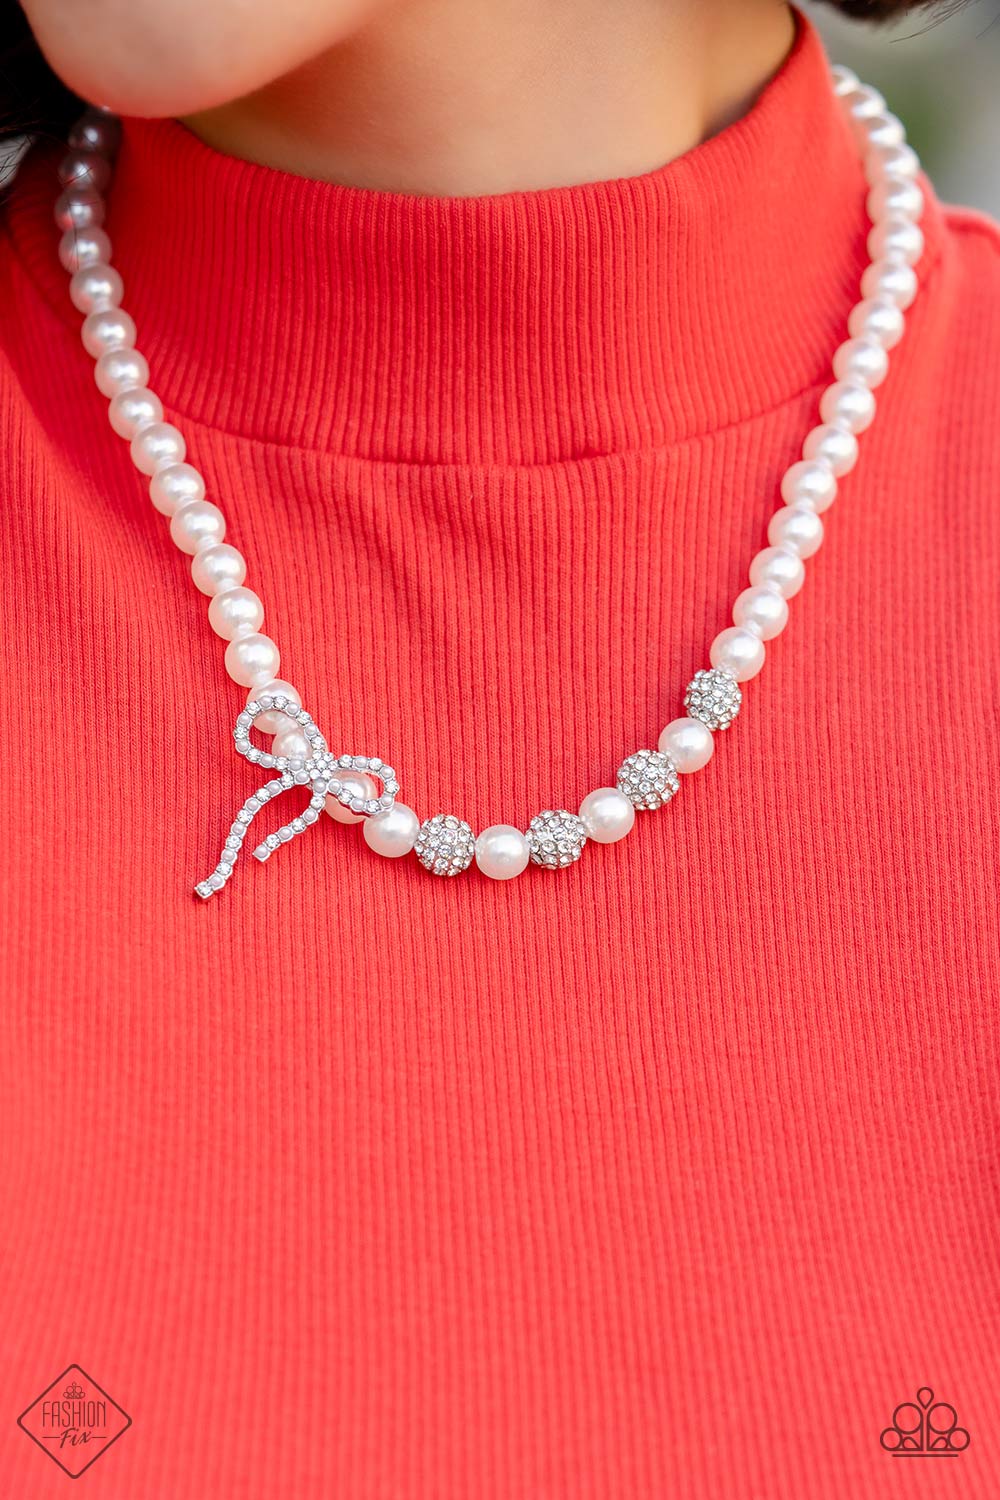 Classy Cadenza - White Necklace - Fashion Fix - December 2022 